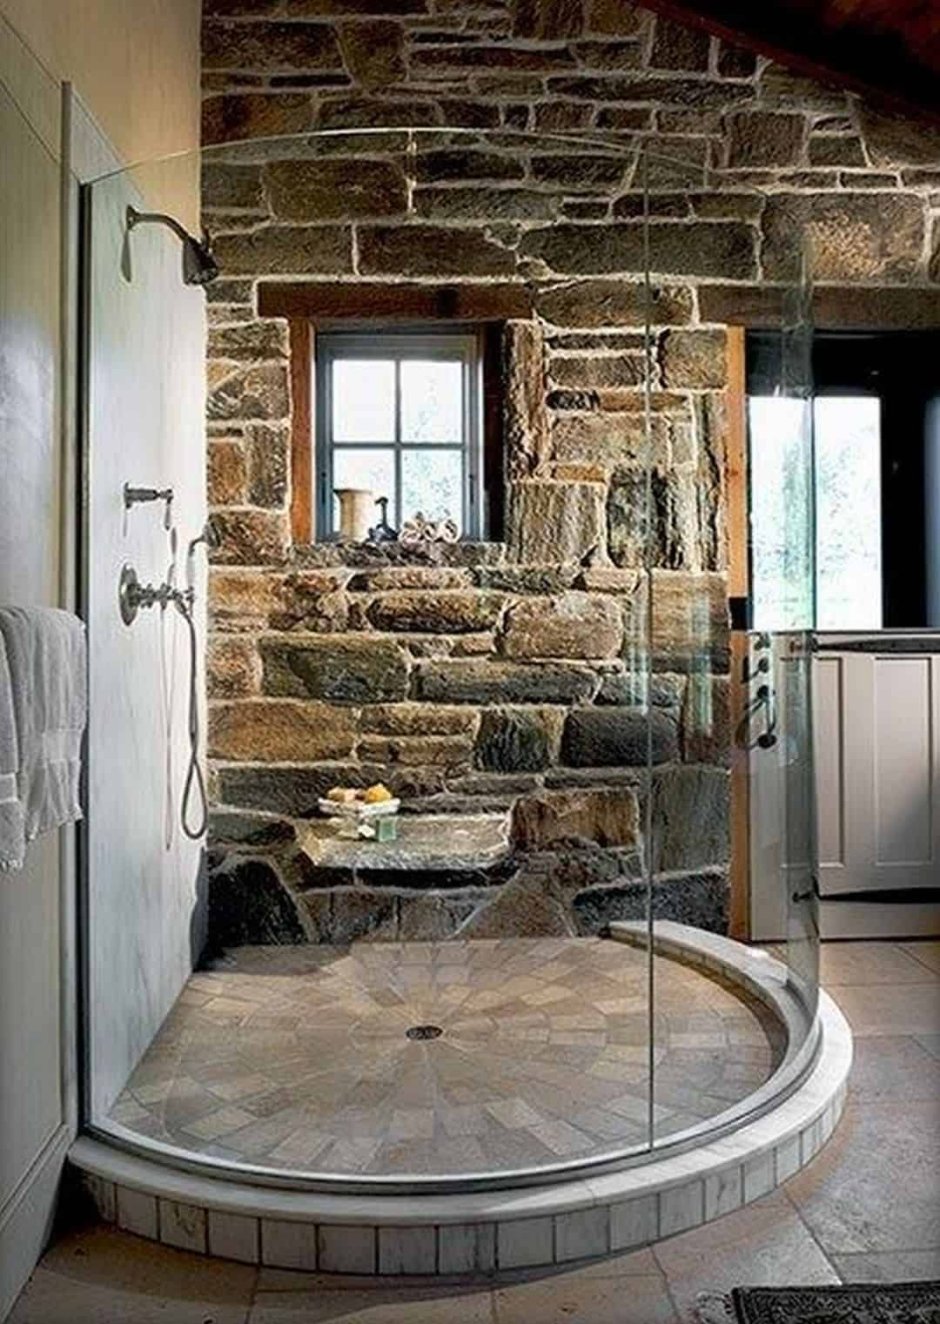 Ванная в Каменном стиле